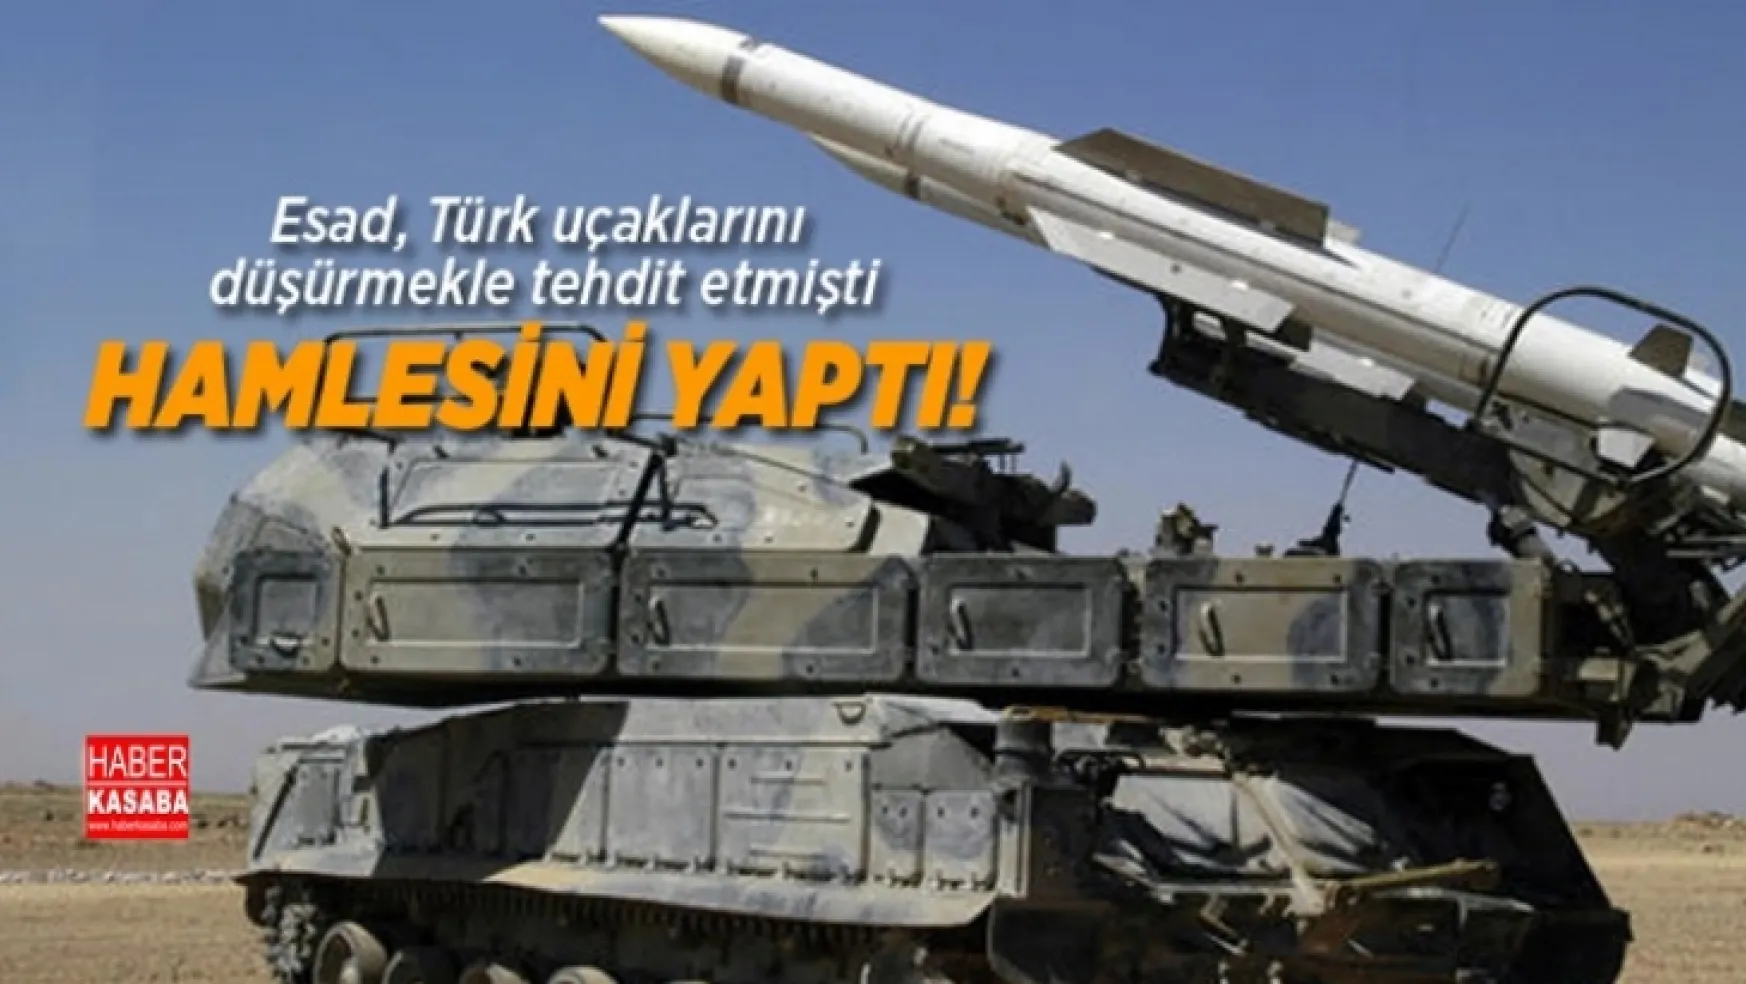 Esad, Türk uçaklarını düşürmekle tehdit etmişti, İlk Hamlesini yaptı!